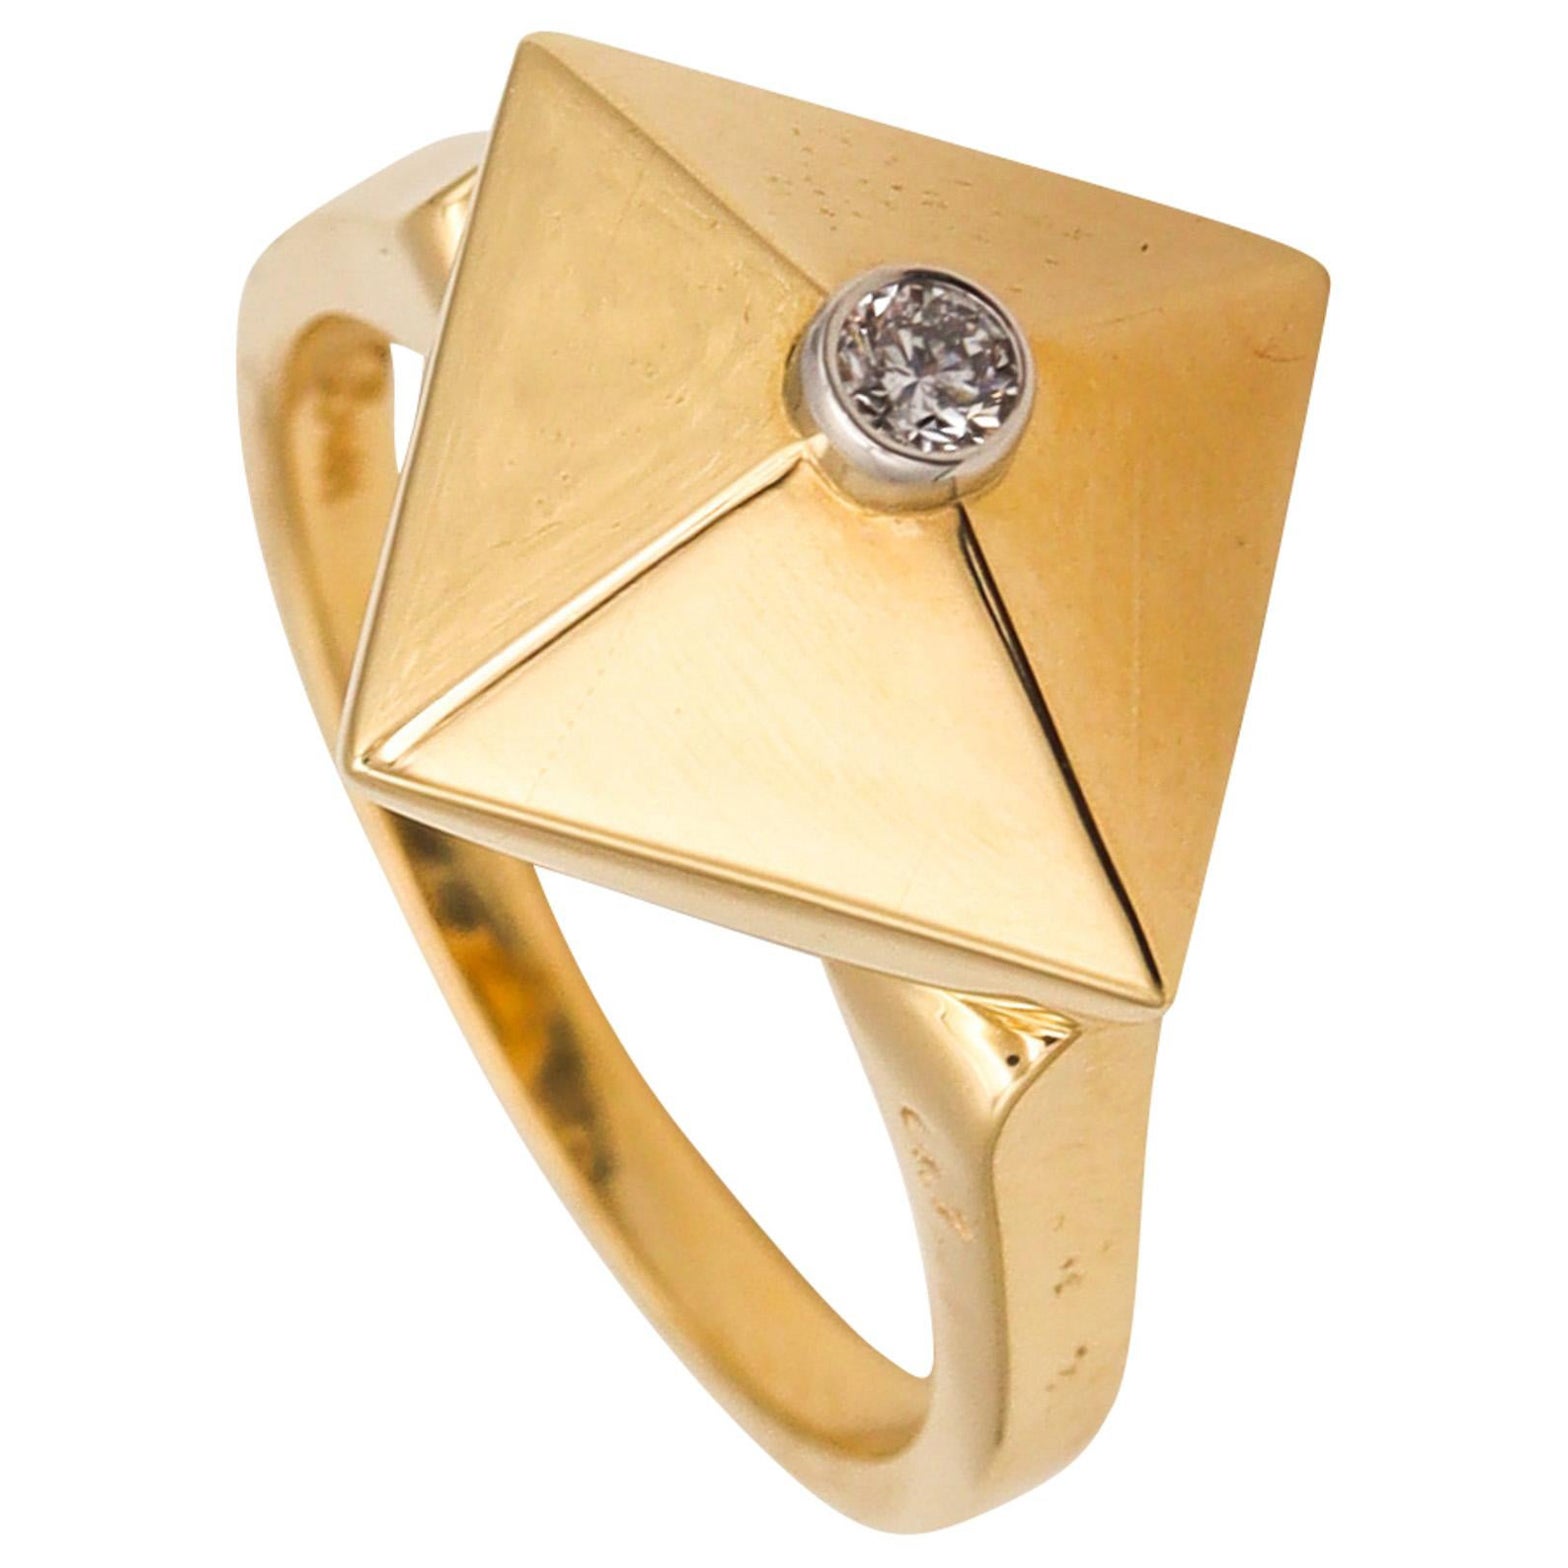 Aletto Brothers, petite bague empilable triangulaire en or jaune 18 carats avec diamants